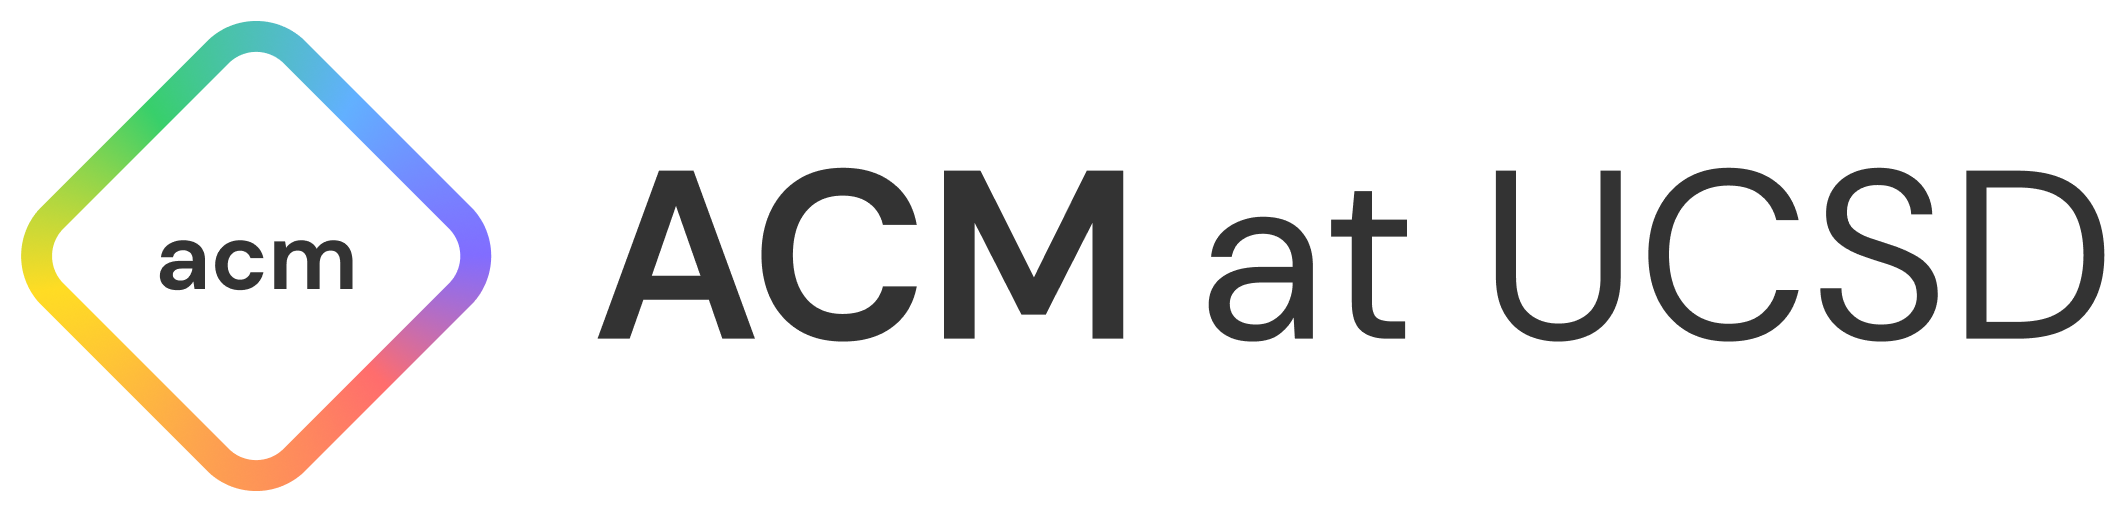 ACM General Wordmark.png